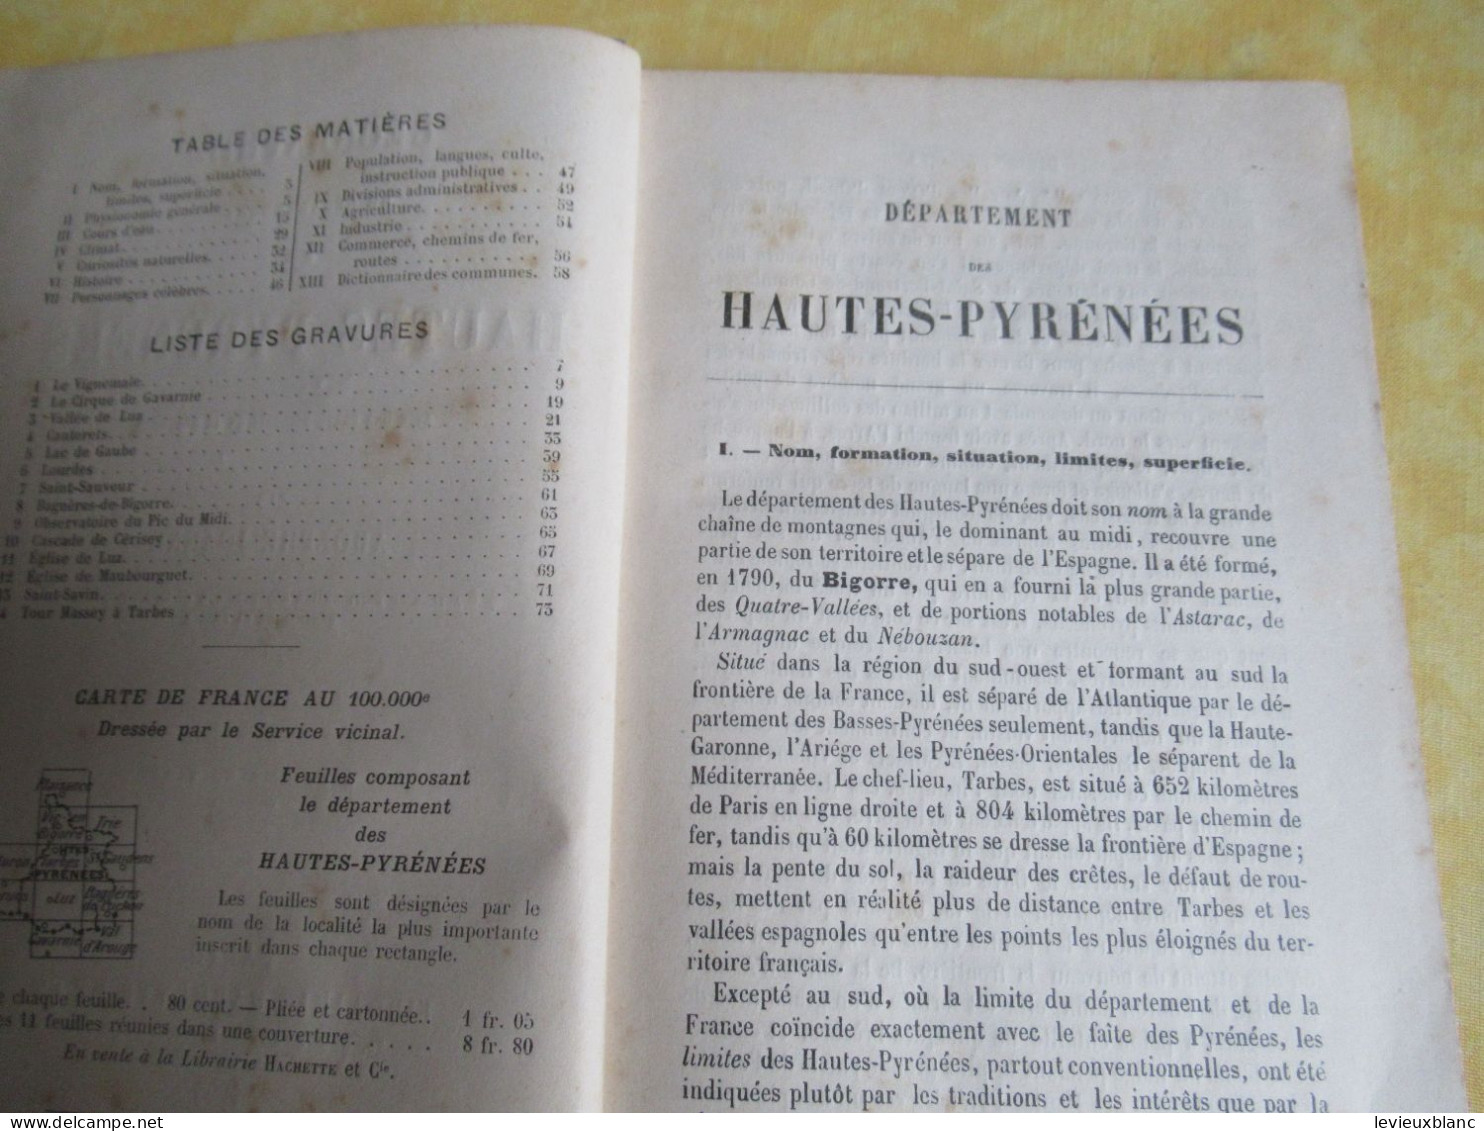 Petit Fascicule De Géographie/ " Hautes Pyrénées " / 7éme édition / Alfred Joanne / Hachette & Cie /1903      PGC550 - Dépliants Touristiques